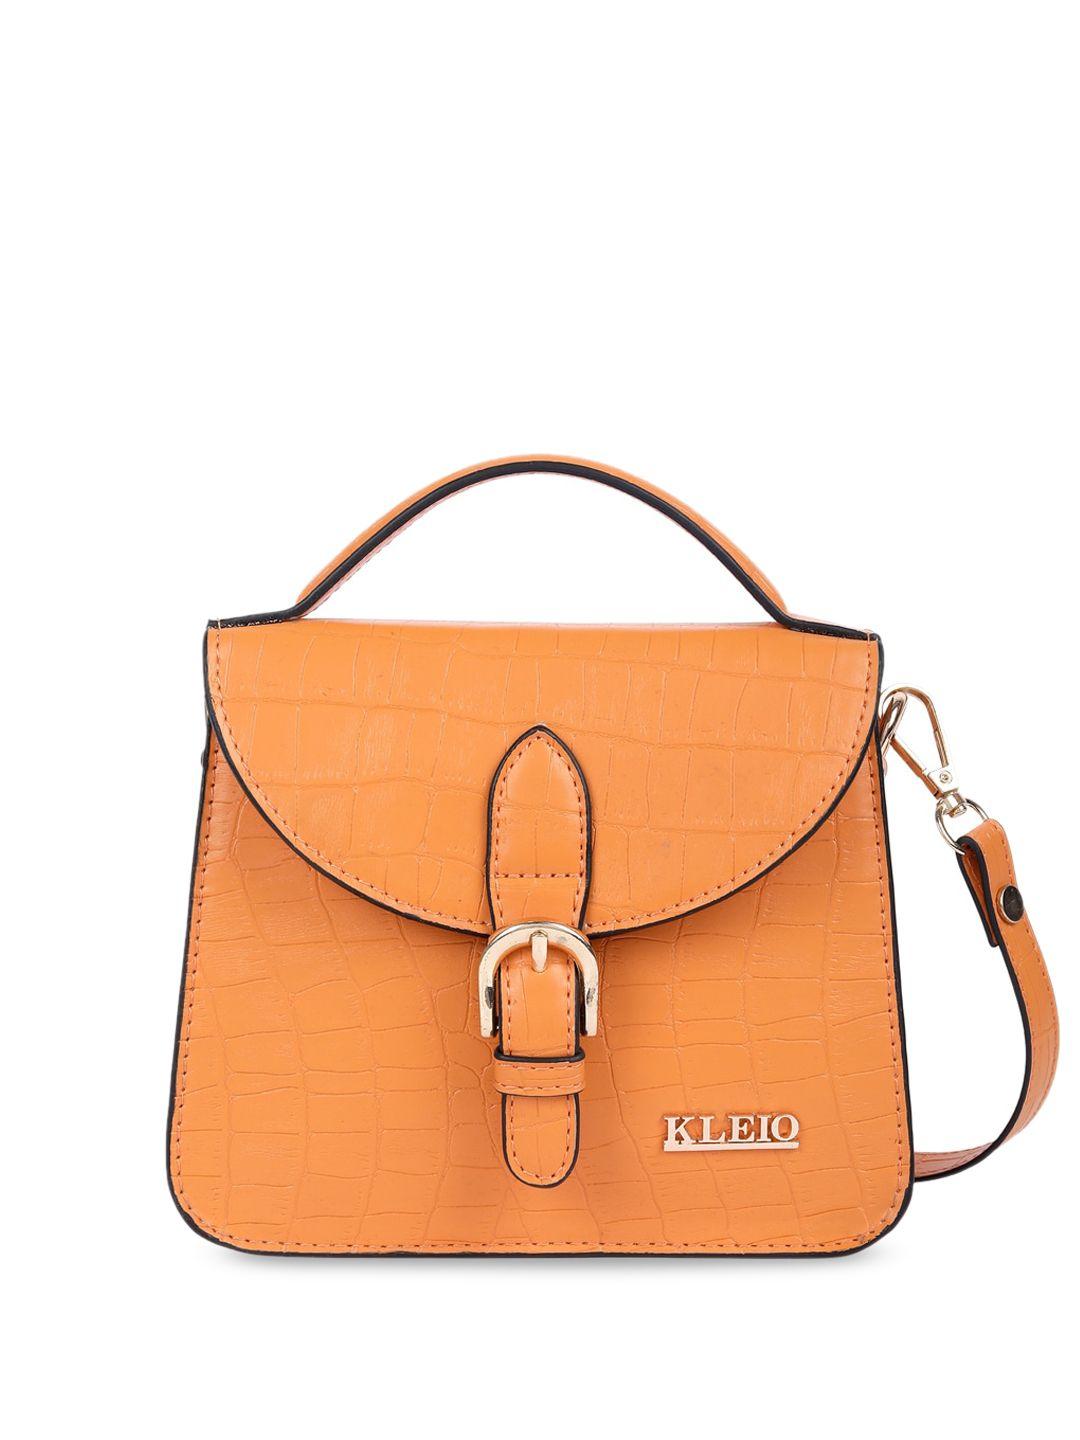 kleio textured structured handheld bag